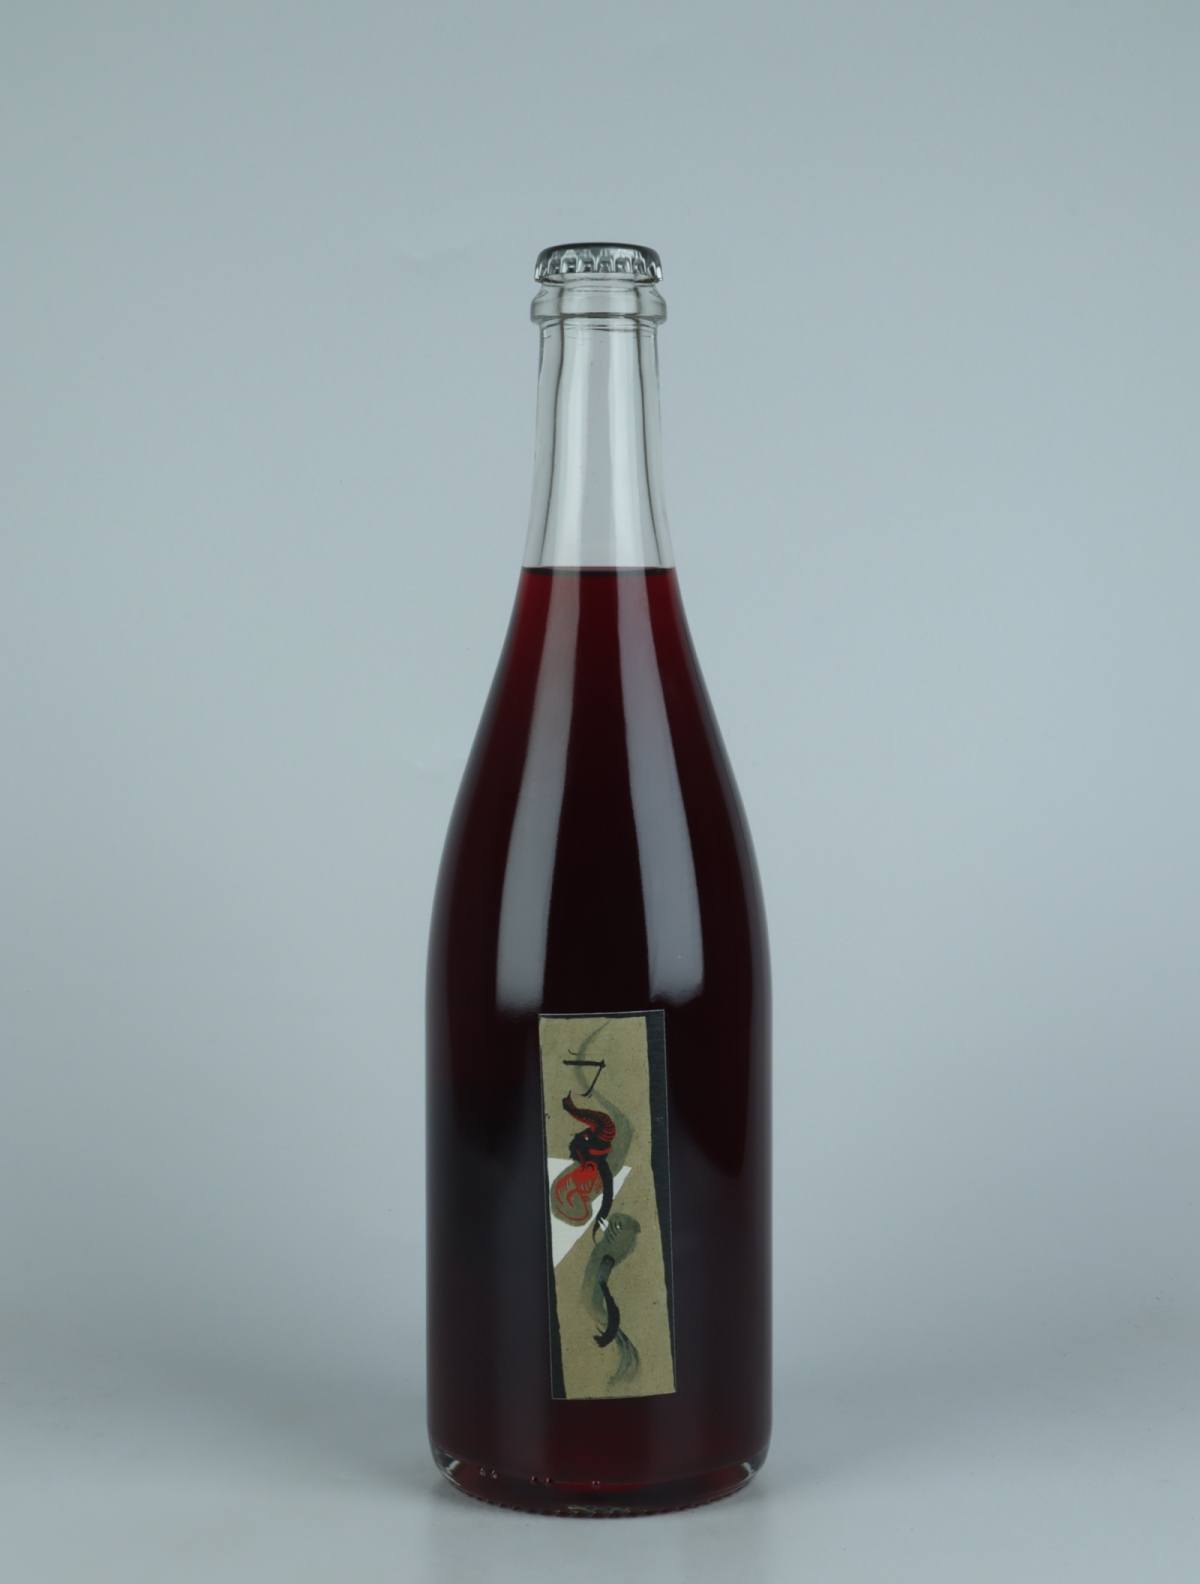 En flaske 2022 Arc Rødvin fra Absurde Génie des Fleurs, Languedoc i Frankrig